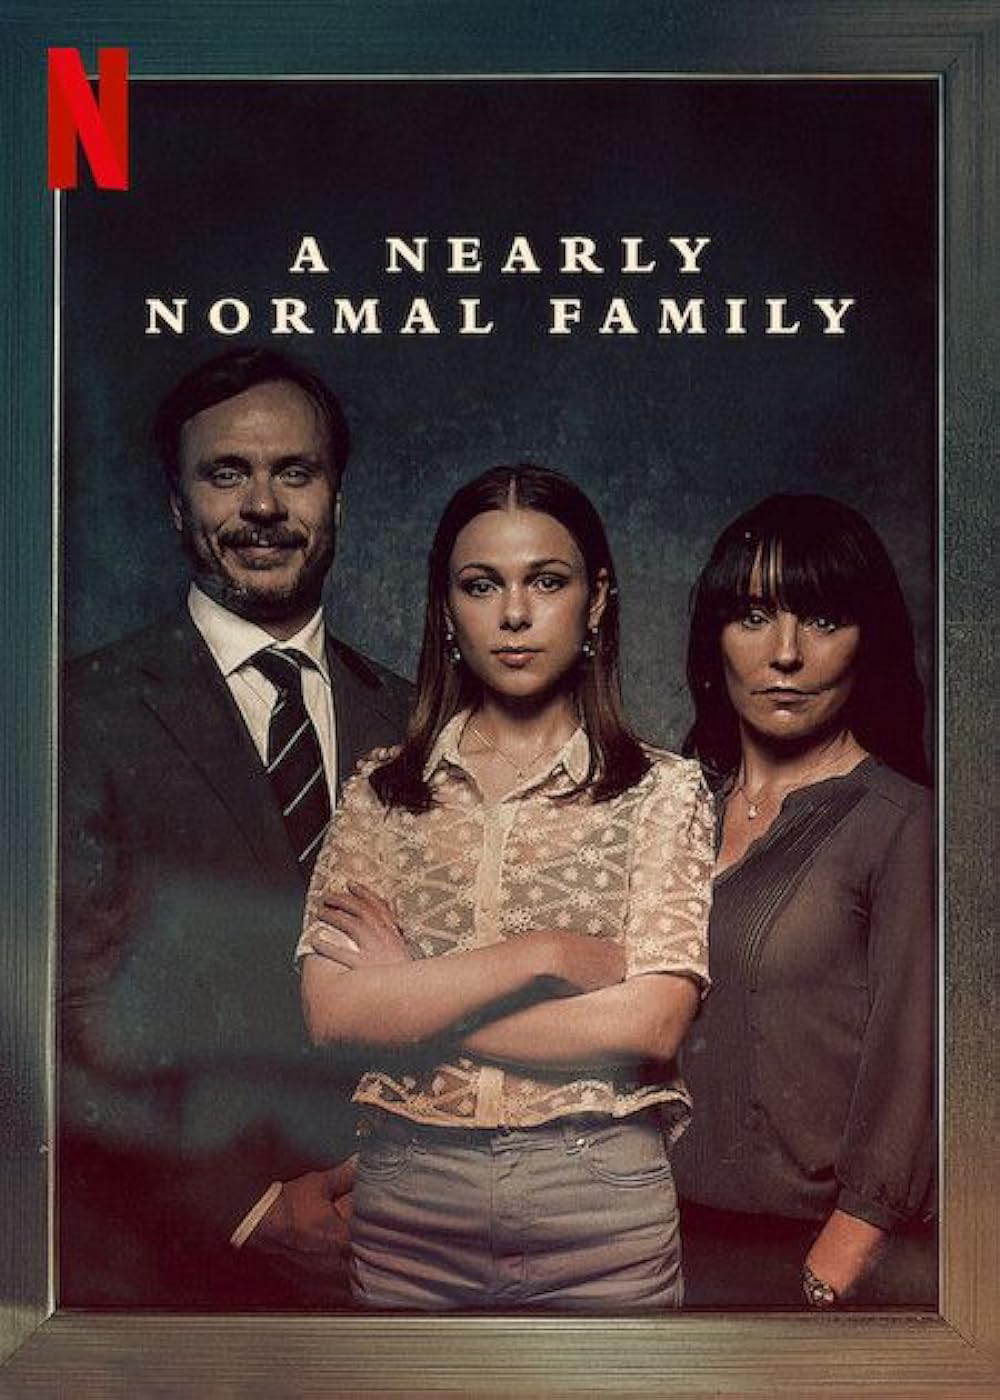 Poster Phim Một gia đình gần bình thường (A Nearly Normal Family)